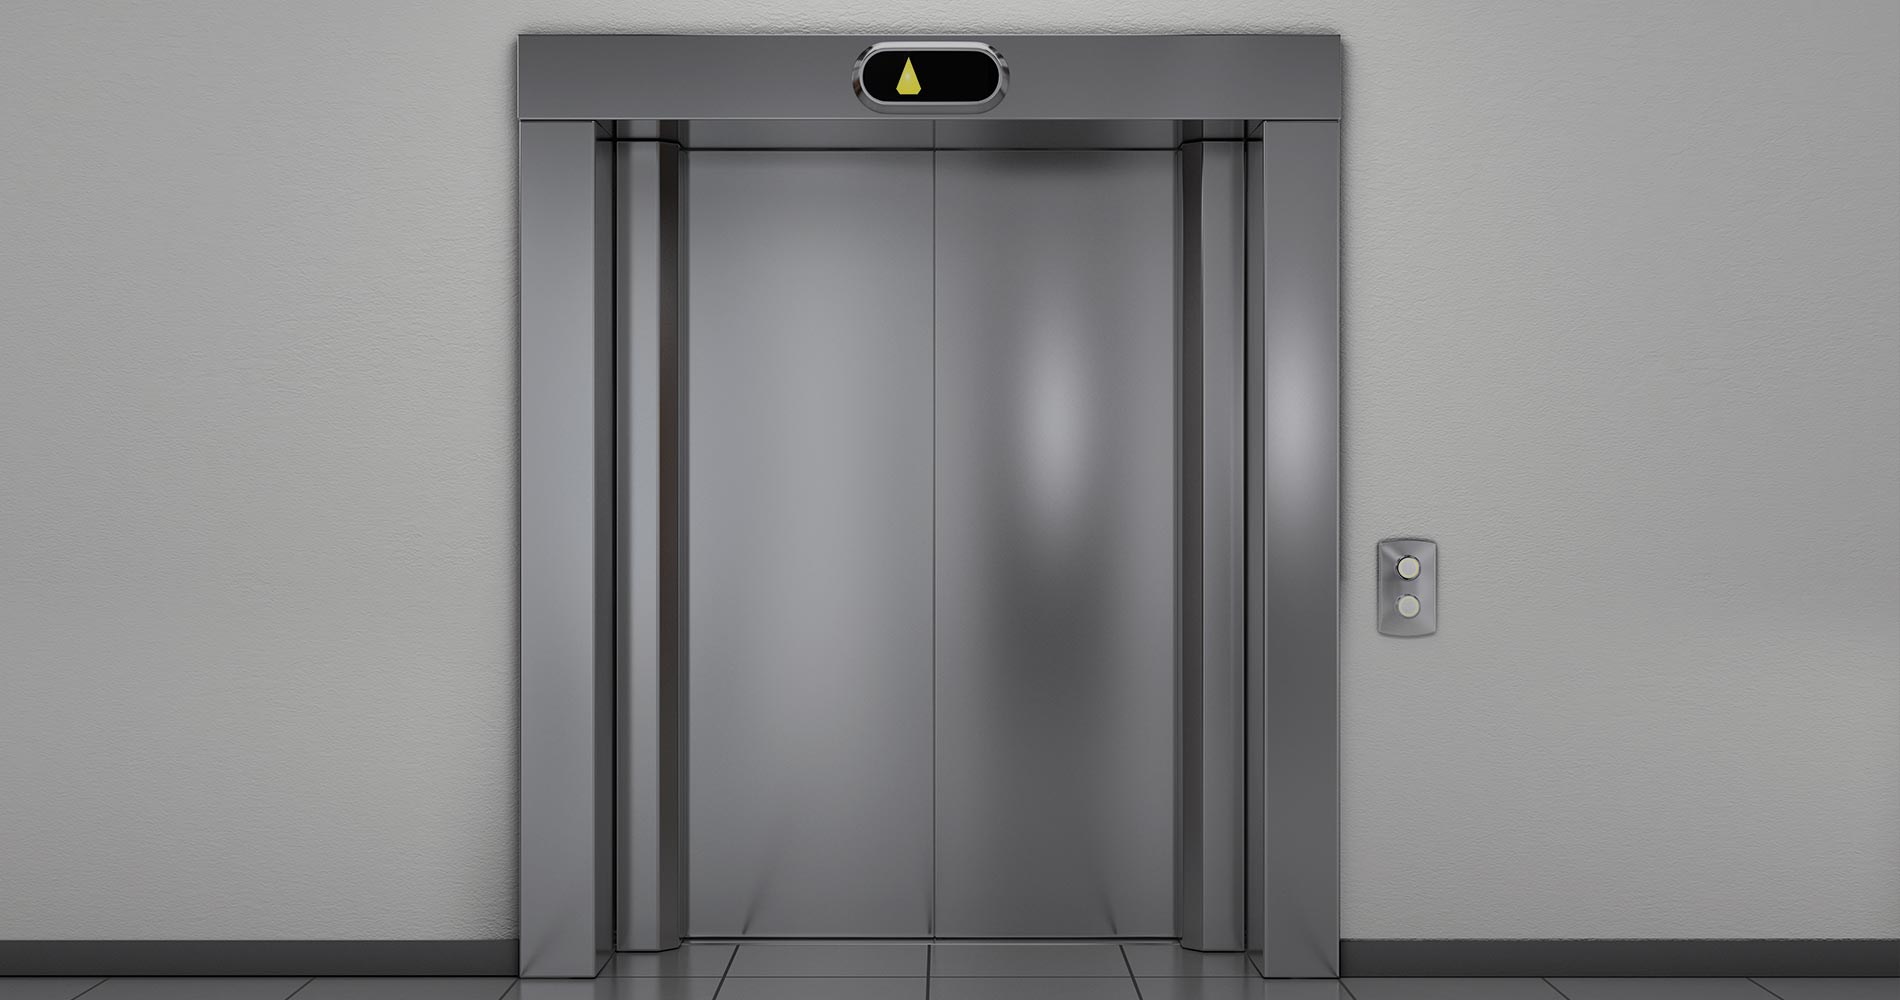 Limpeza de elevadores e superfícies de inox: Silicone é a solução